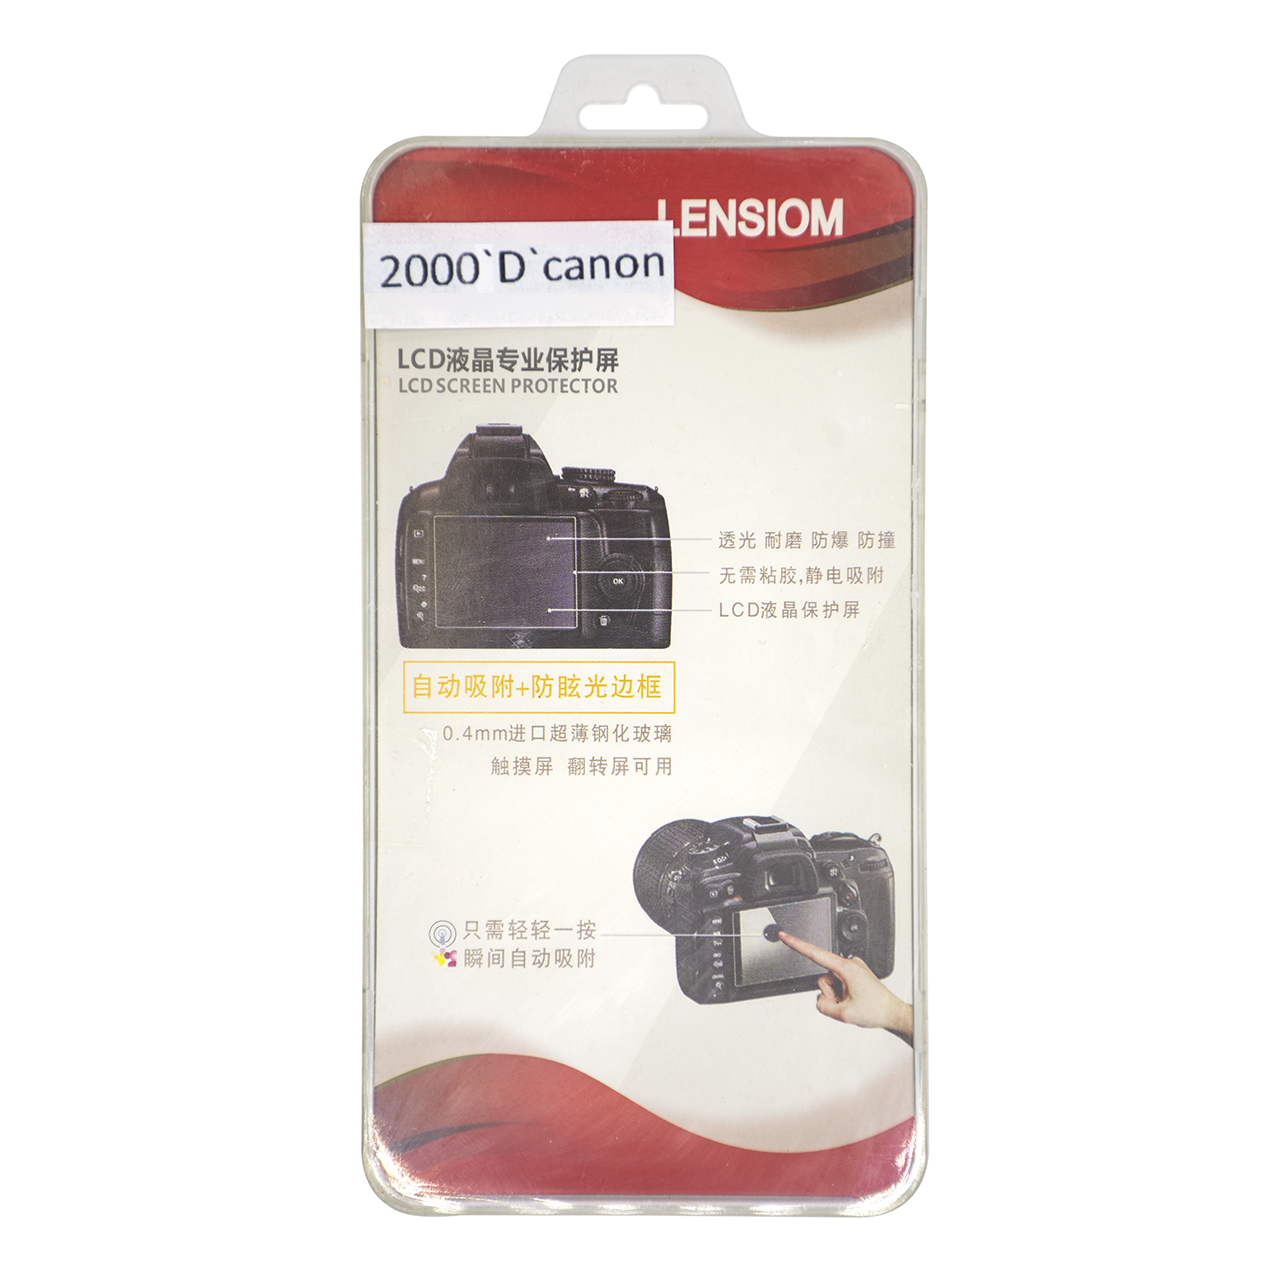 محافظ صفحه نمایش دوربین لنزیوم مدل L2000D مناسب برای کانن 2000D